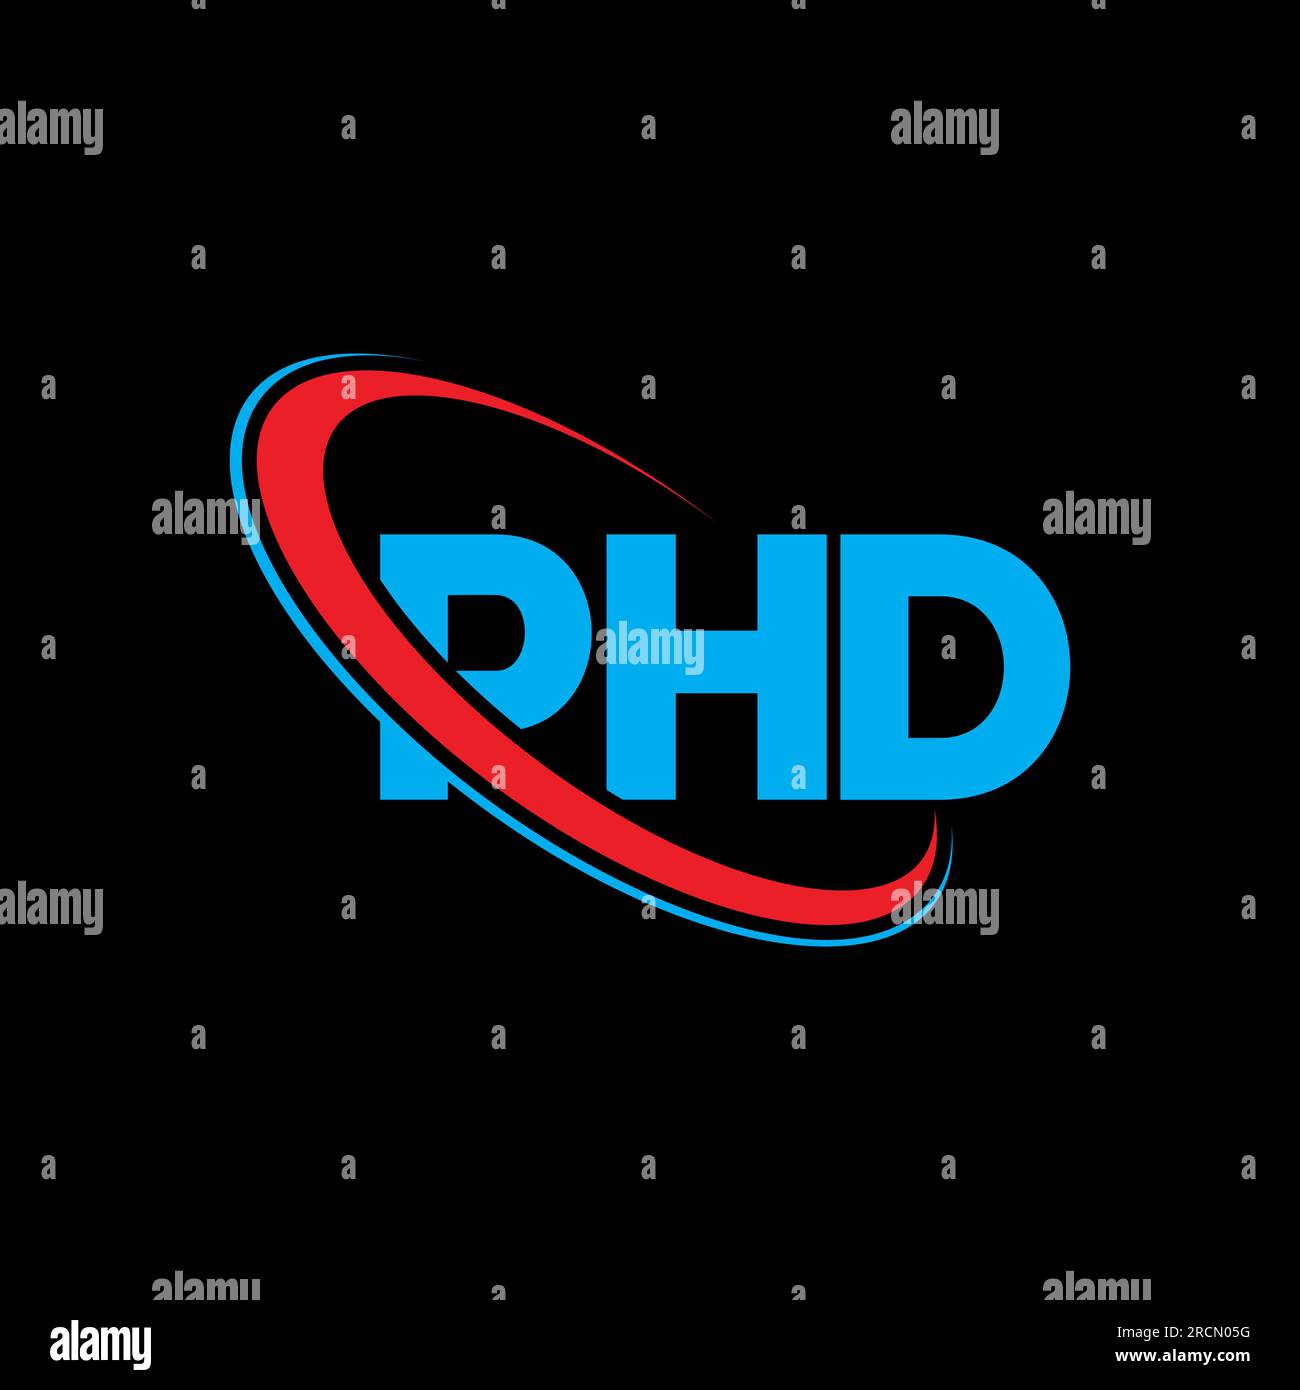 PHD-Logo. DOKTORANDENBRIEF. LOGO mit DOKTORANDENBRIEF. Initialen PHD-Logo, verbunden mit einem Kreis und einem Monogramm-Logo in Großbuchstaben. DOKTORTITEL für Technologie, Unternehmen Stock Vektor